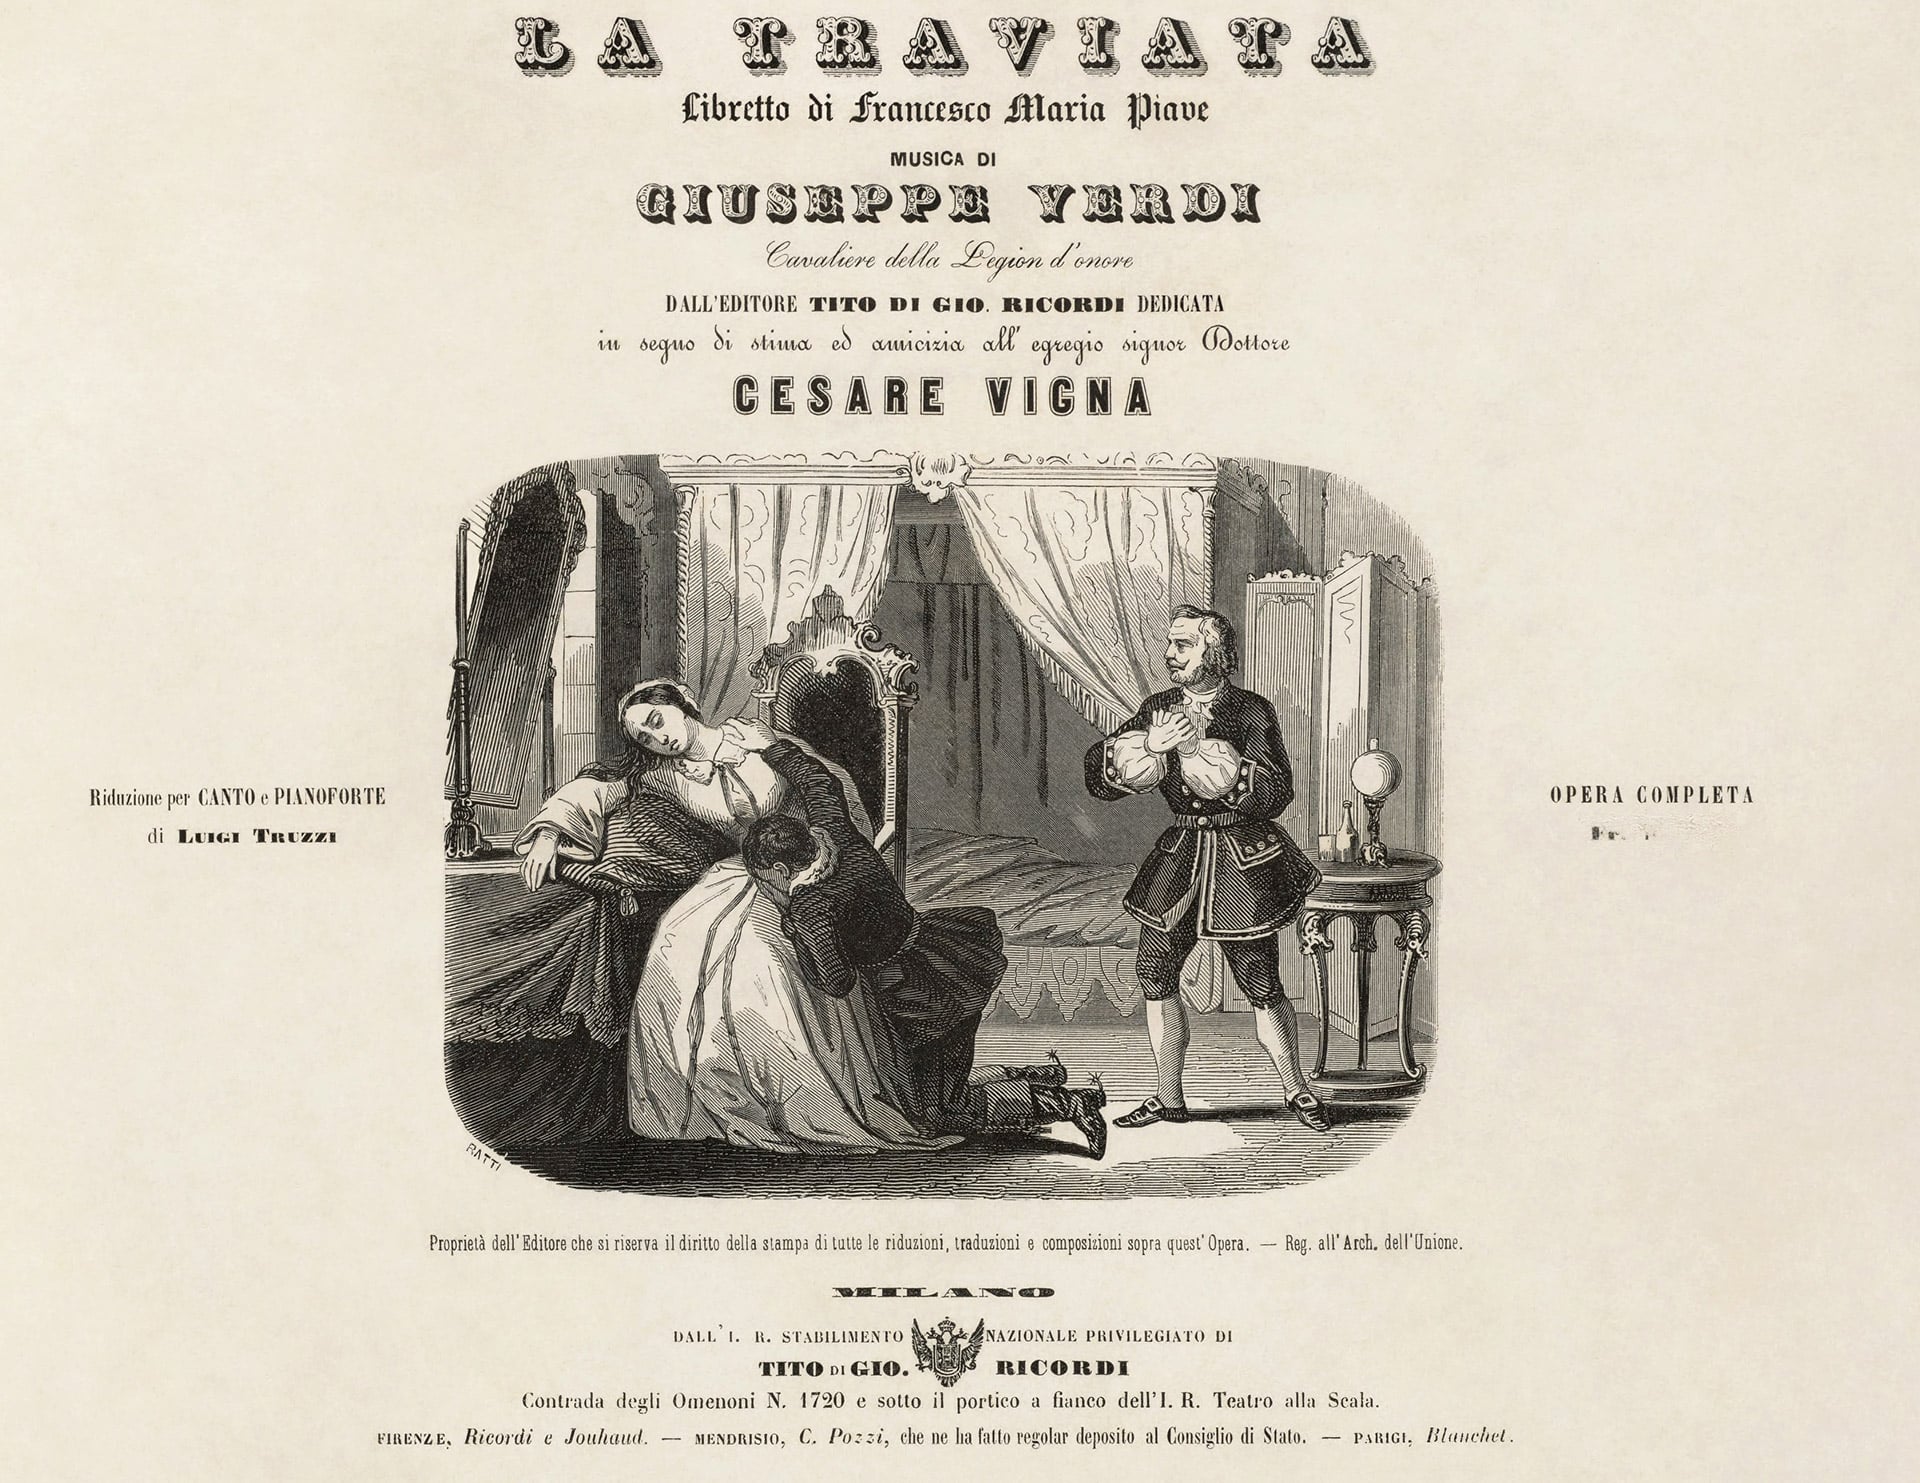 Title page of the vocal score for Giuseppe Verdi’s popular opera La Traviata